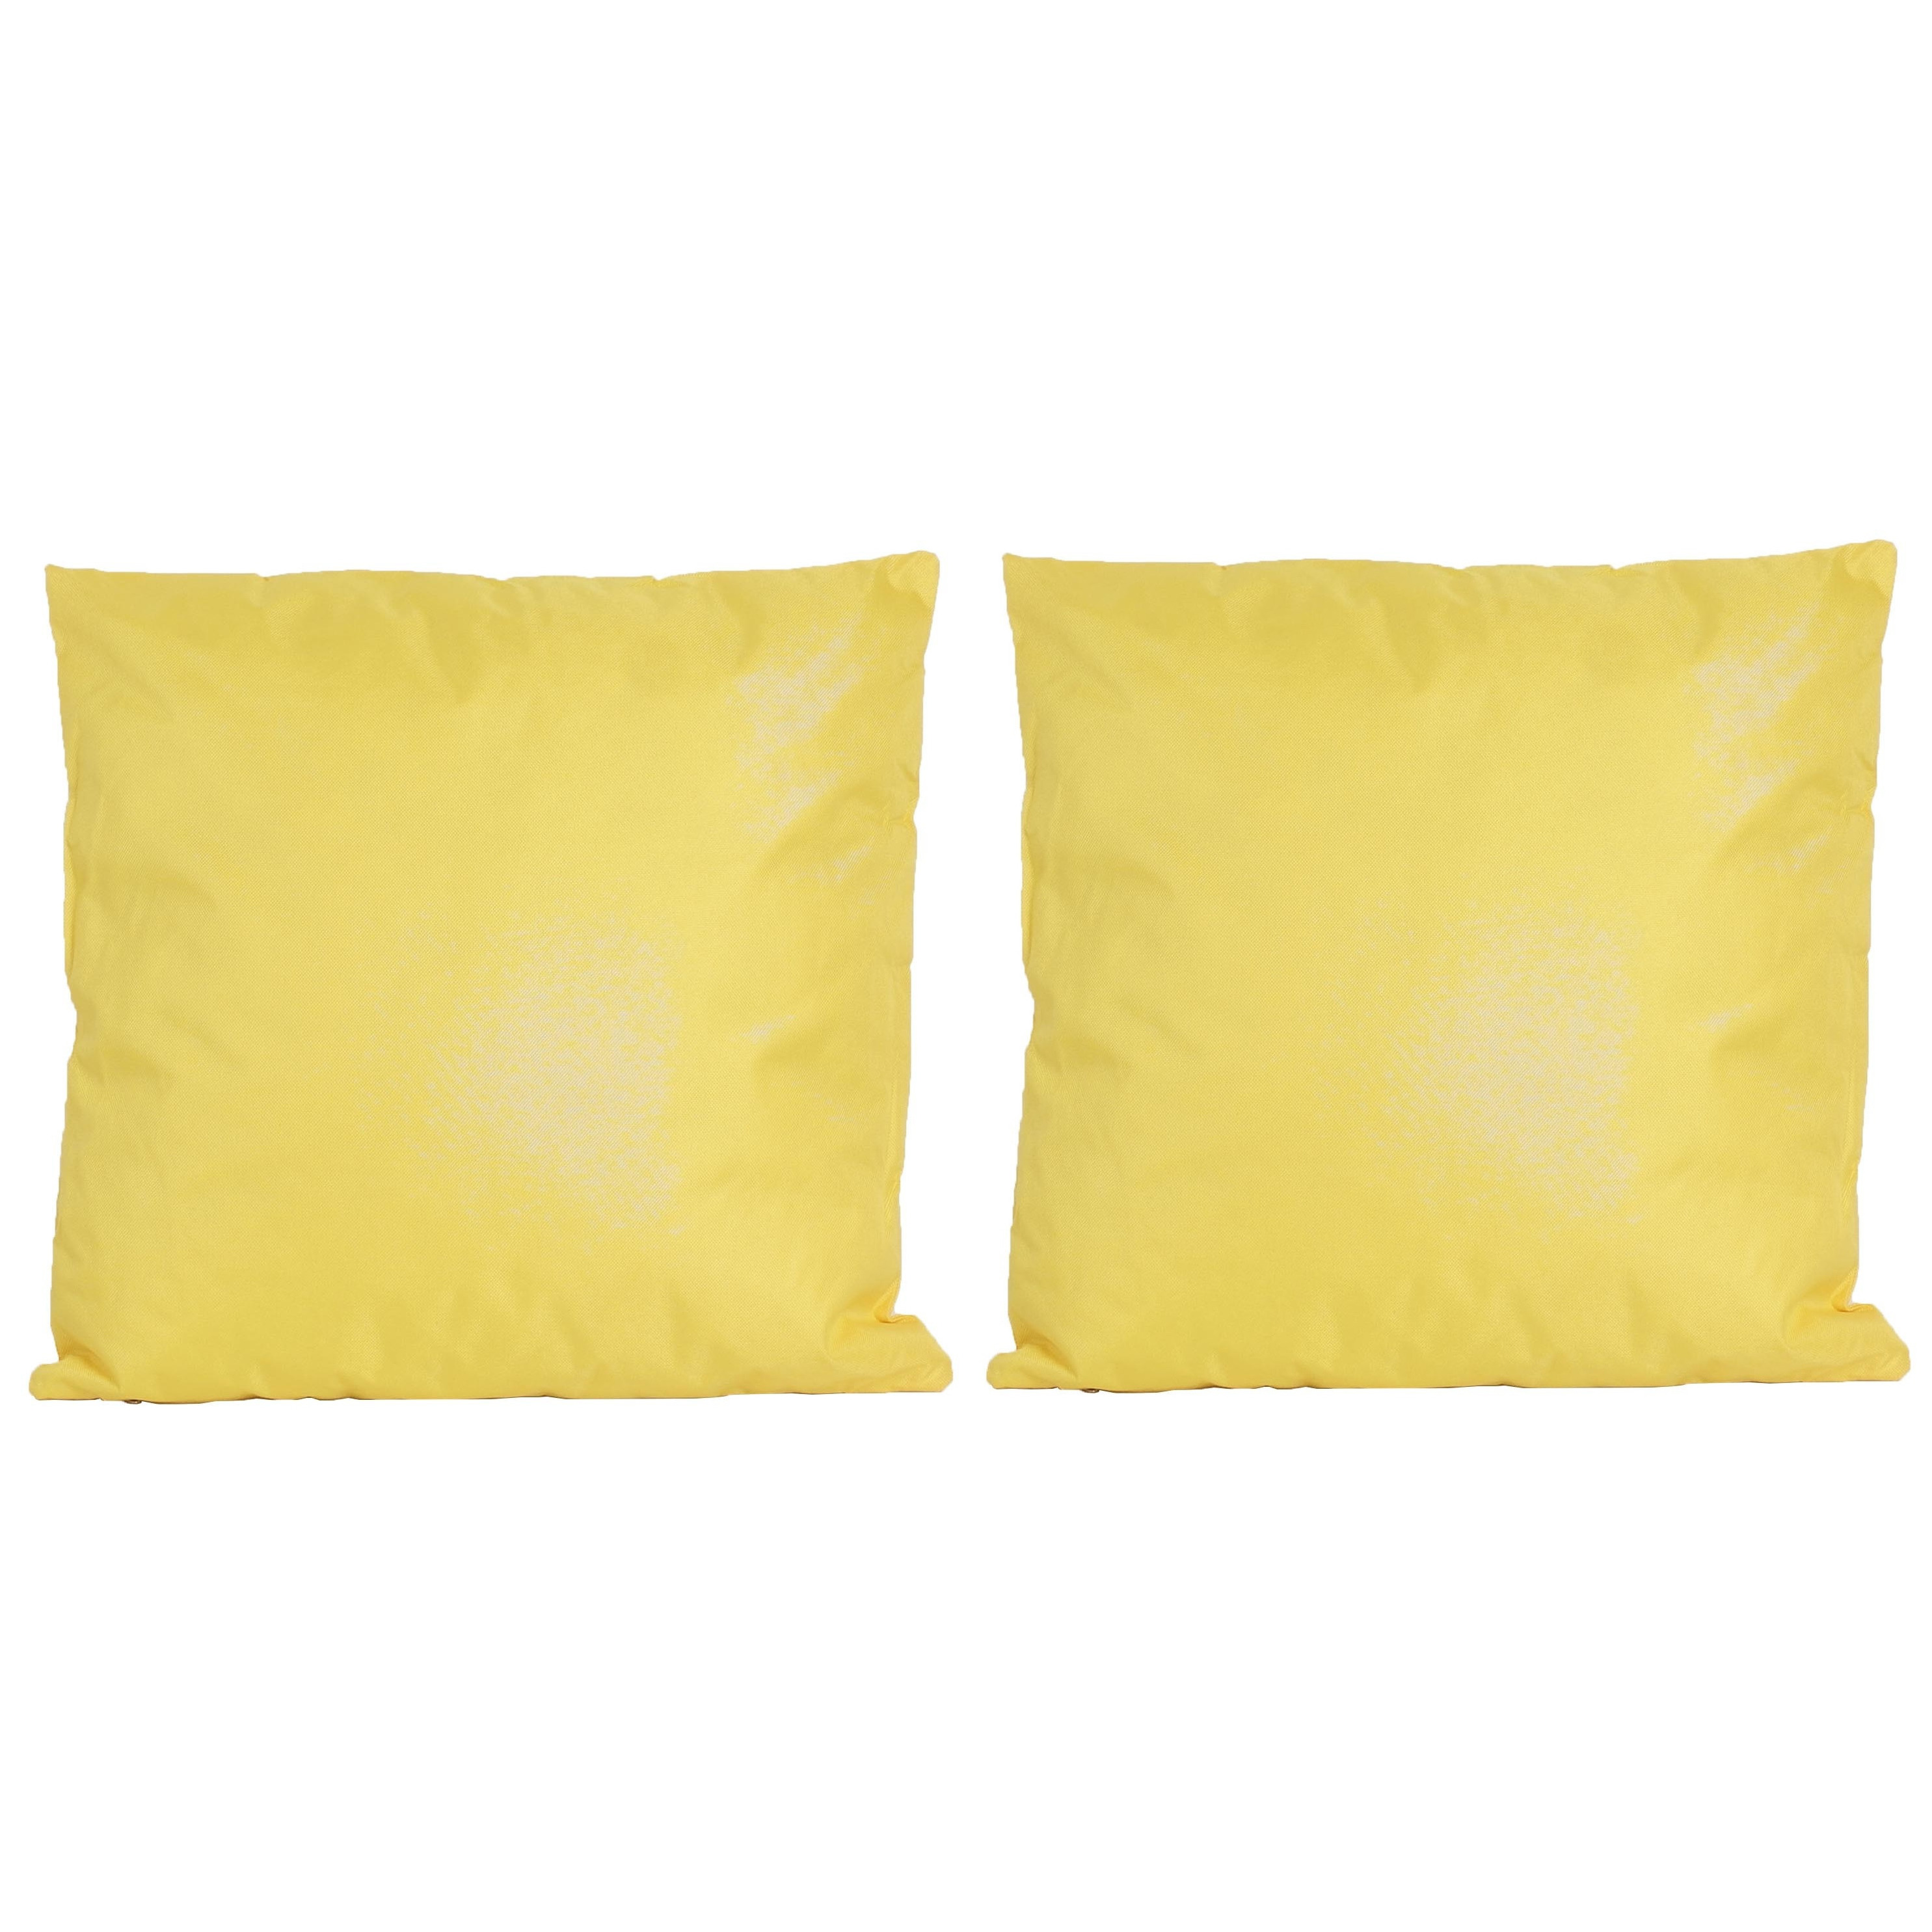 6x Bank-sier kussens voor binnen en buiten in de kleur geel 45 x 45 cm